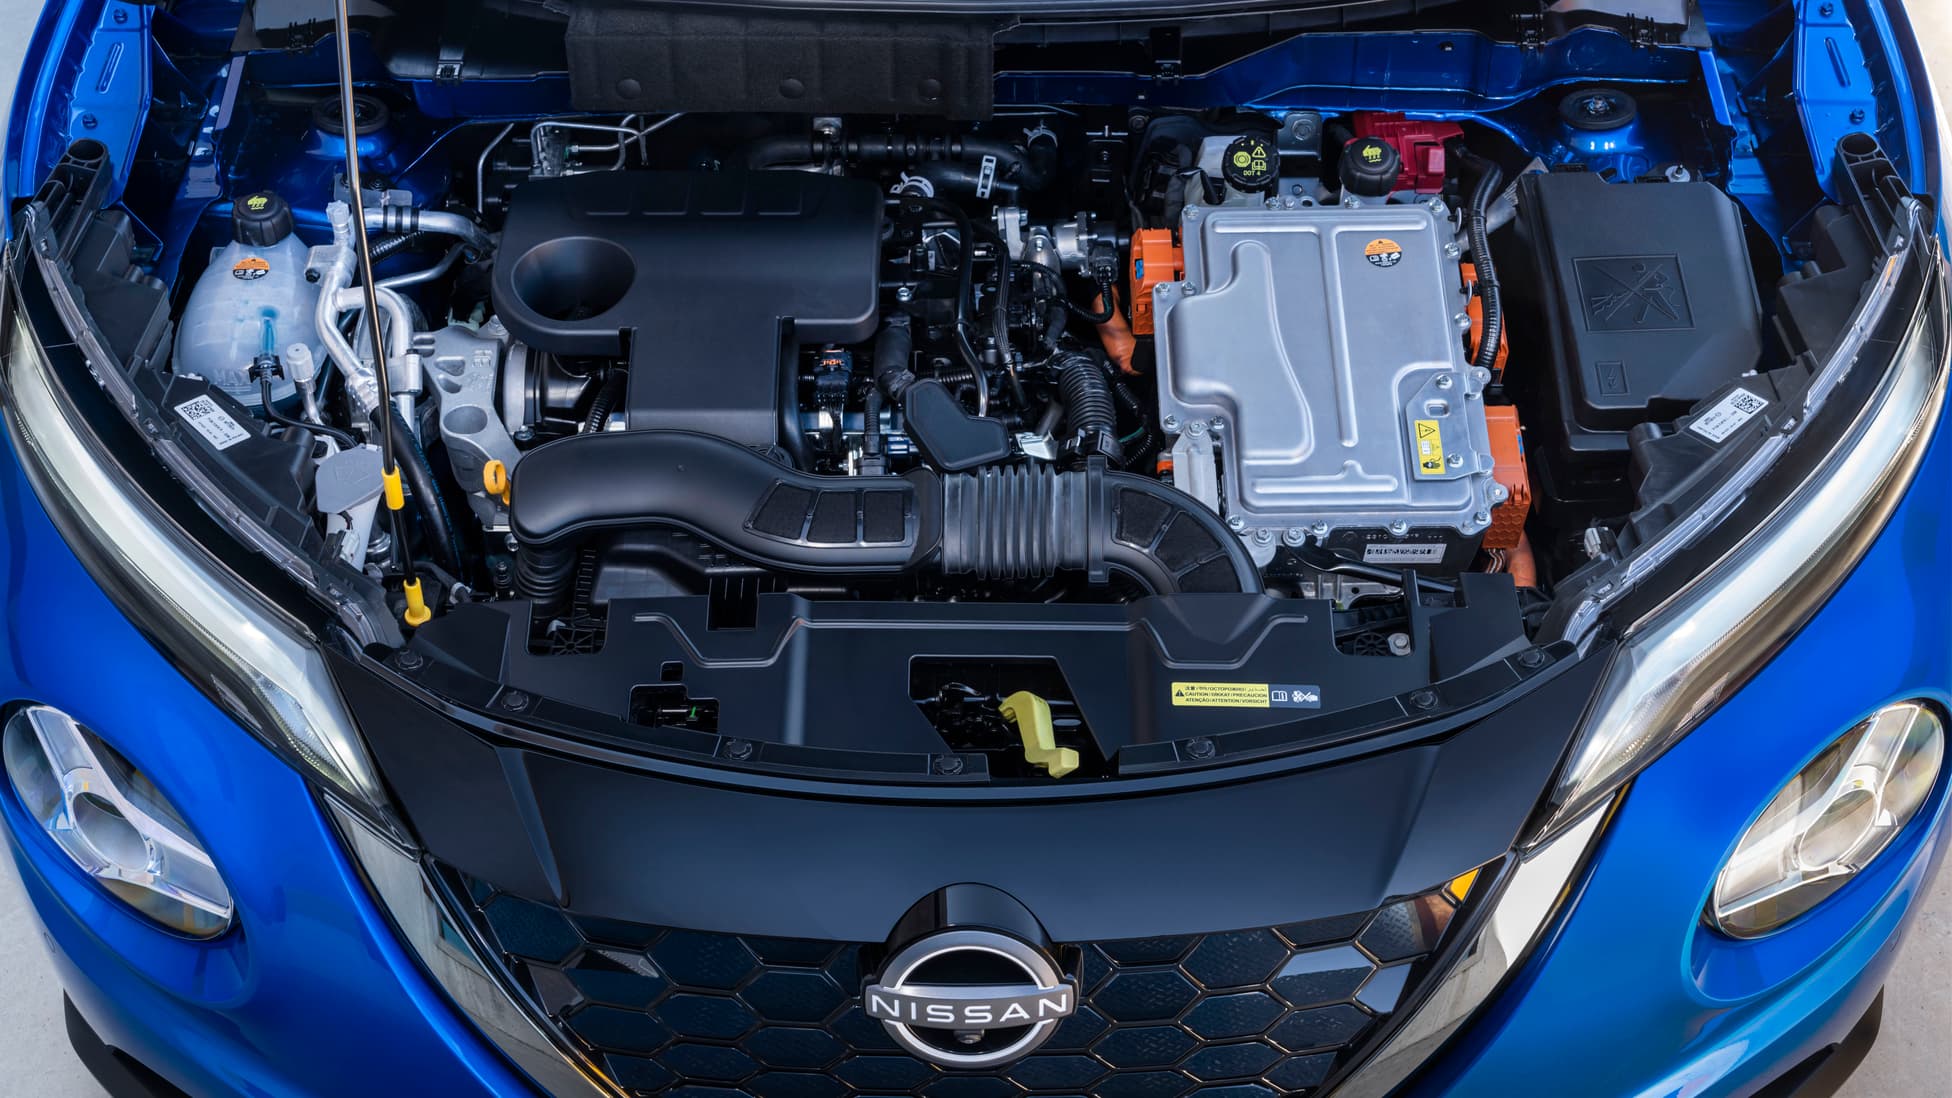 2022 Nissan Juke Hybrid specs, nissan juke hybrid about, nissan juke hybrid performance, nissan juke hybrid specifications, nissan juke hybrid range, nissan juke hybrid engine